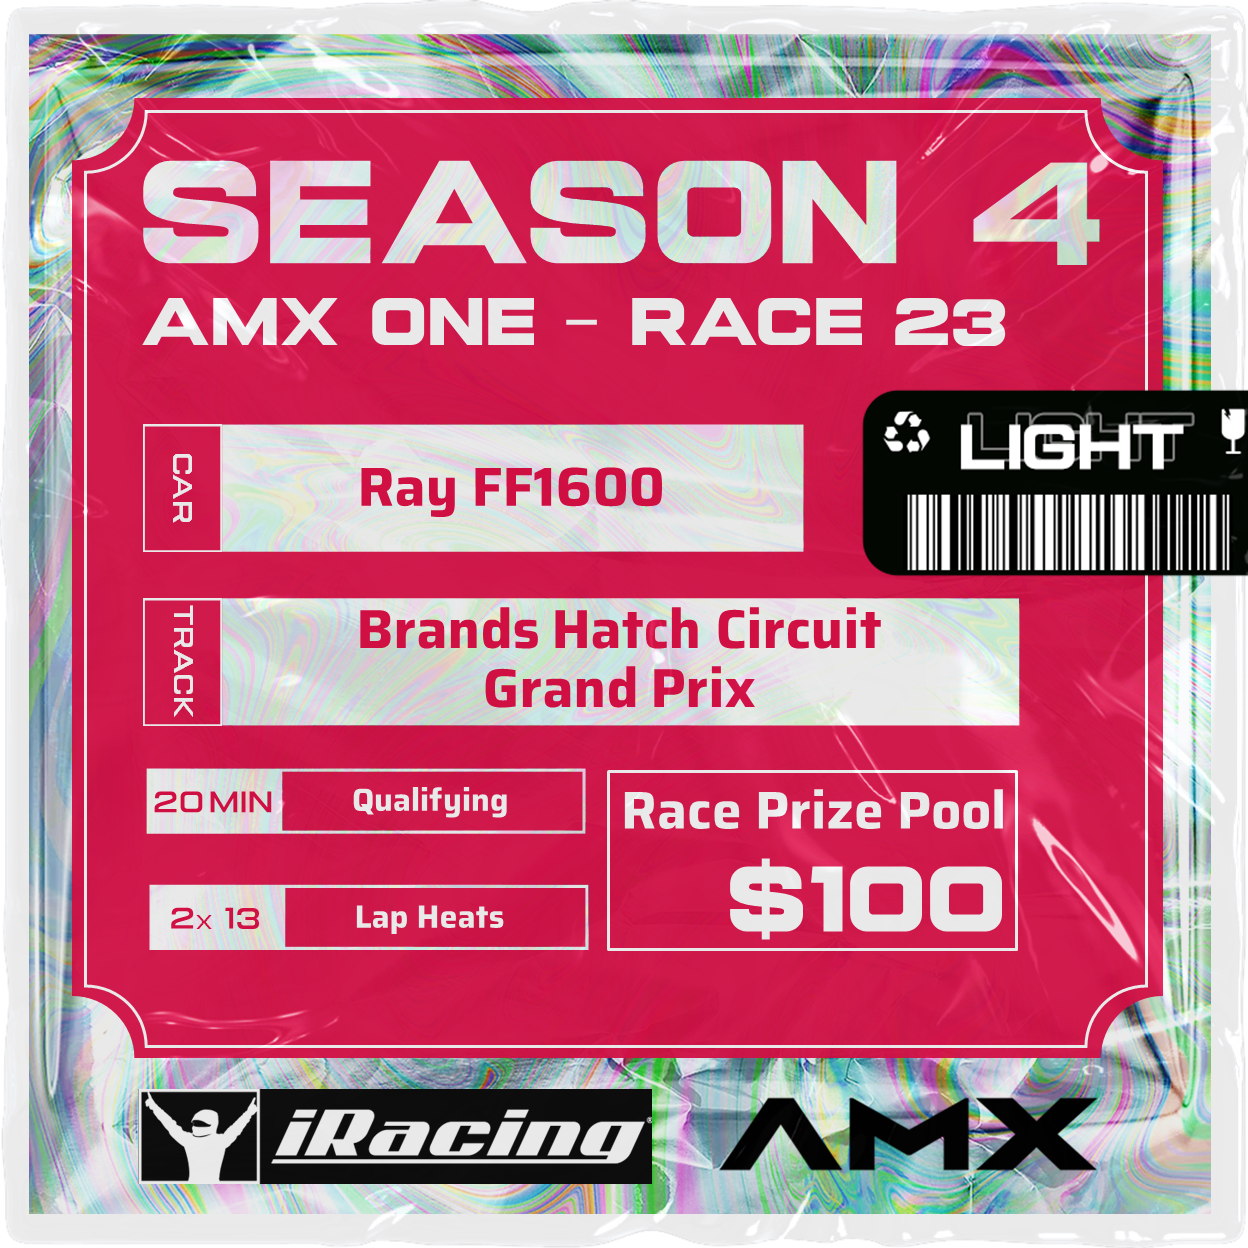 AMX ONE - RACE 23 [3/26 - 5:50 PM GMT]